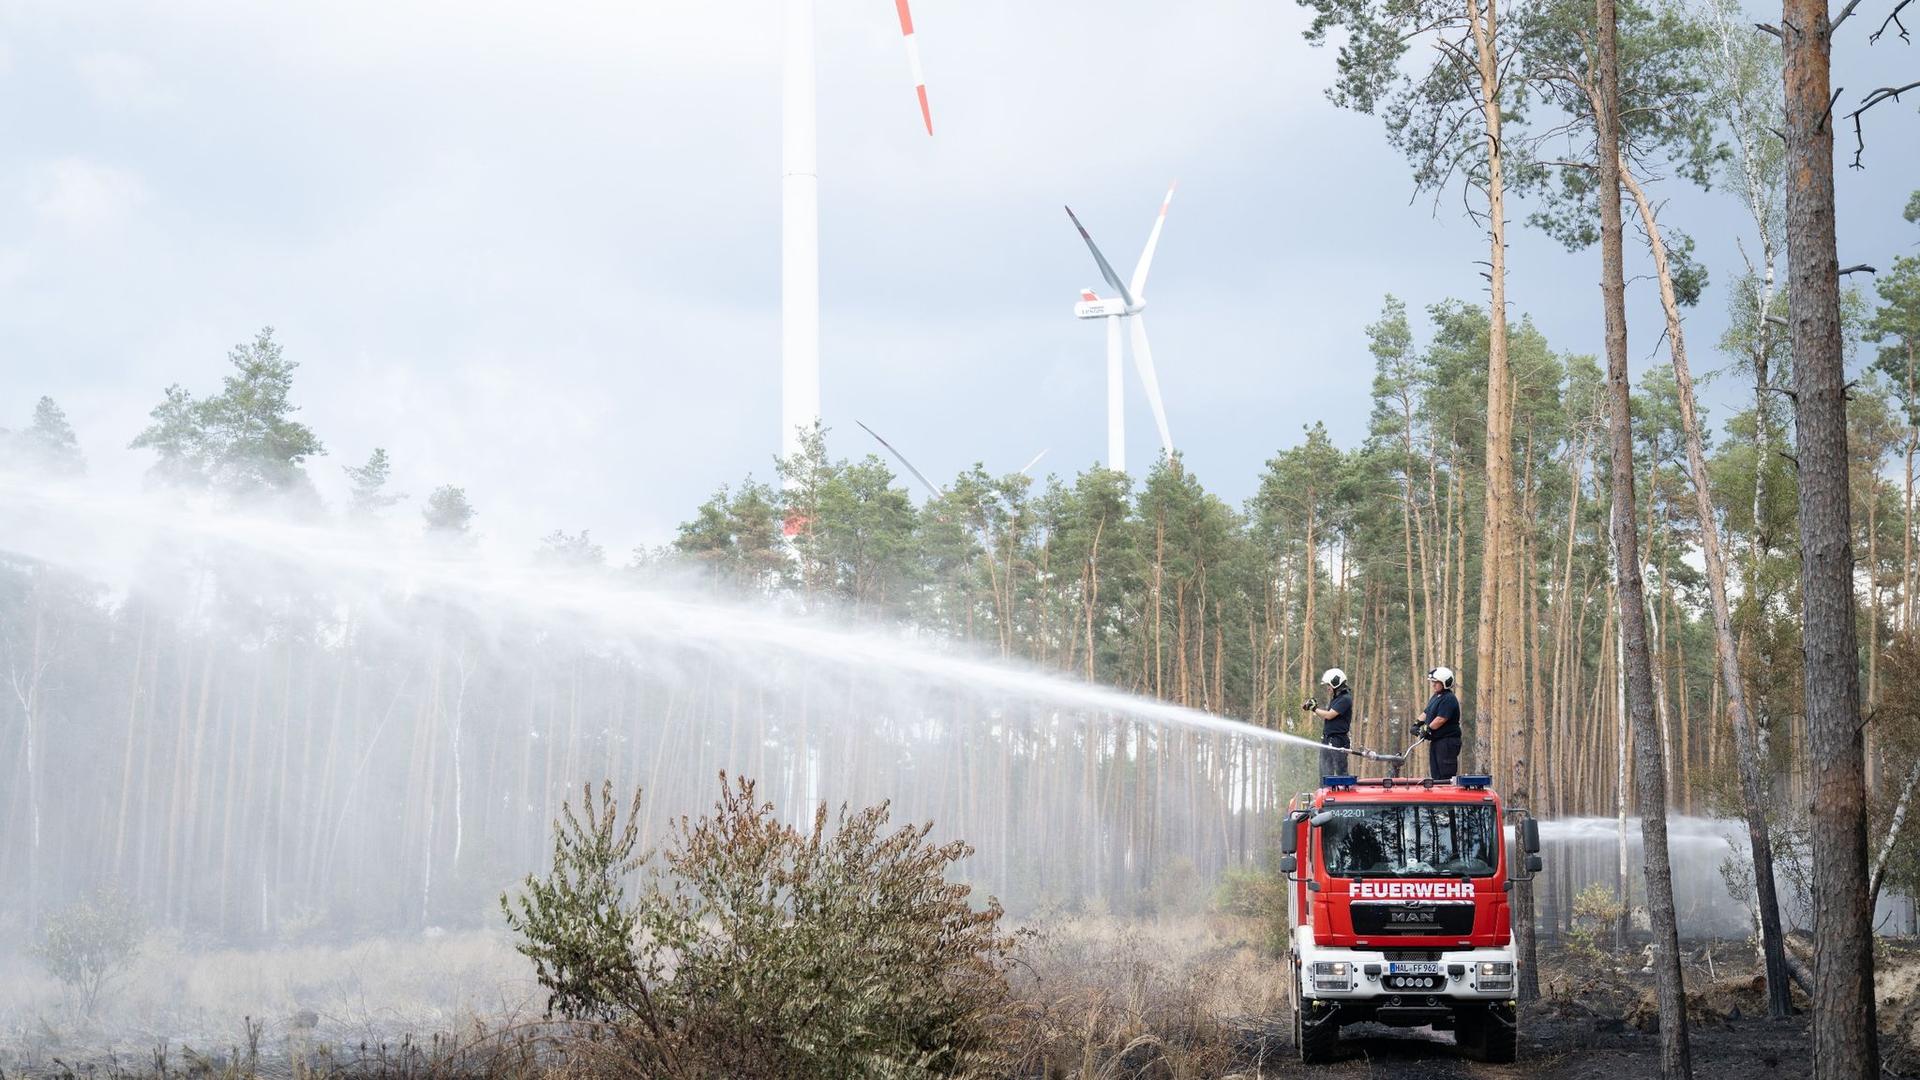 Polizei: Moorbrand im Landkreis Cloppenburg gelöscht